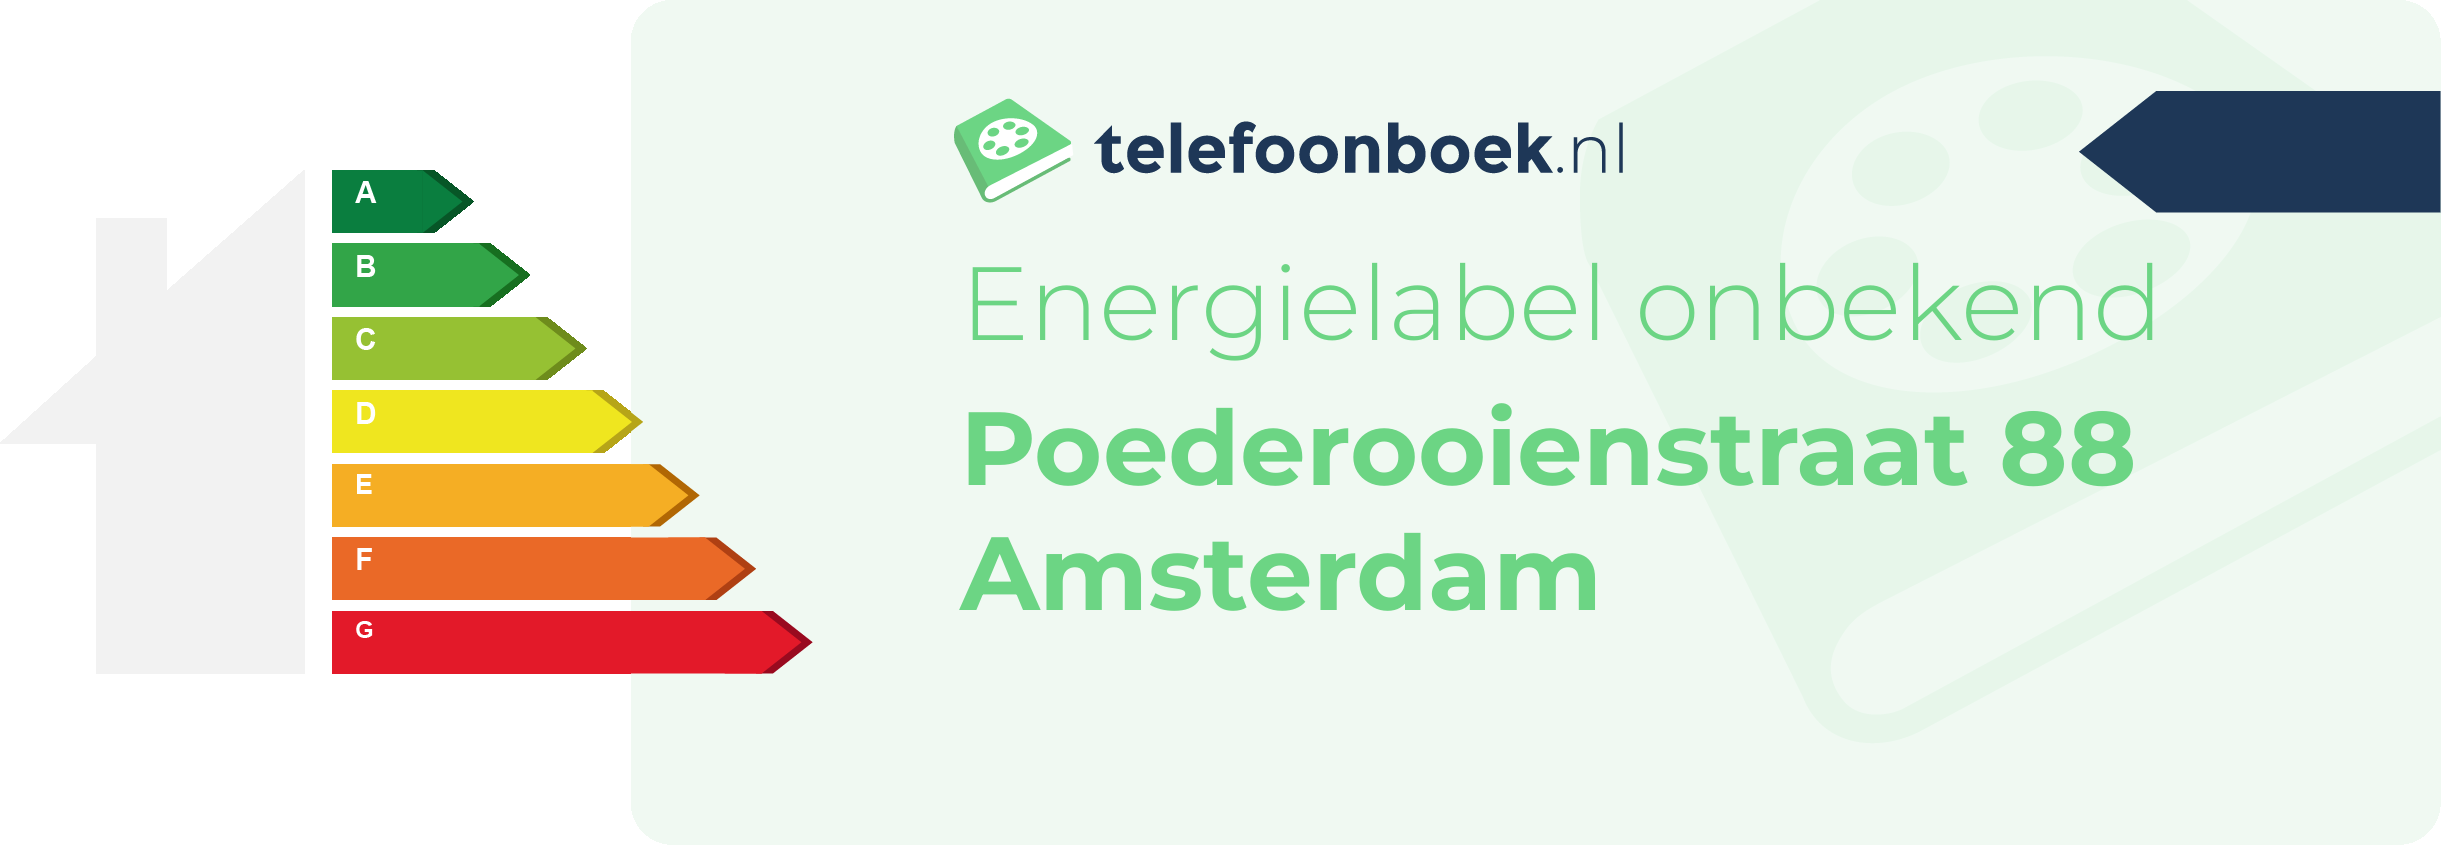 Energielabel Poederooienstraat 88 Amsterdam